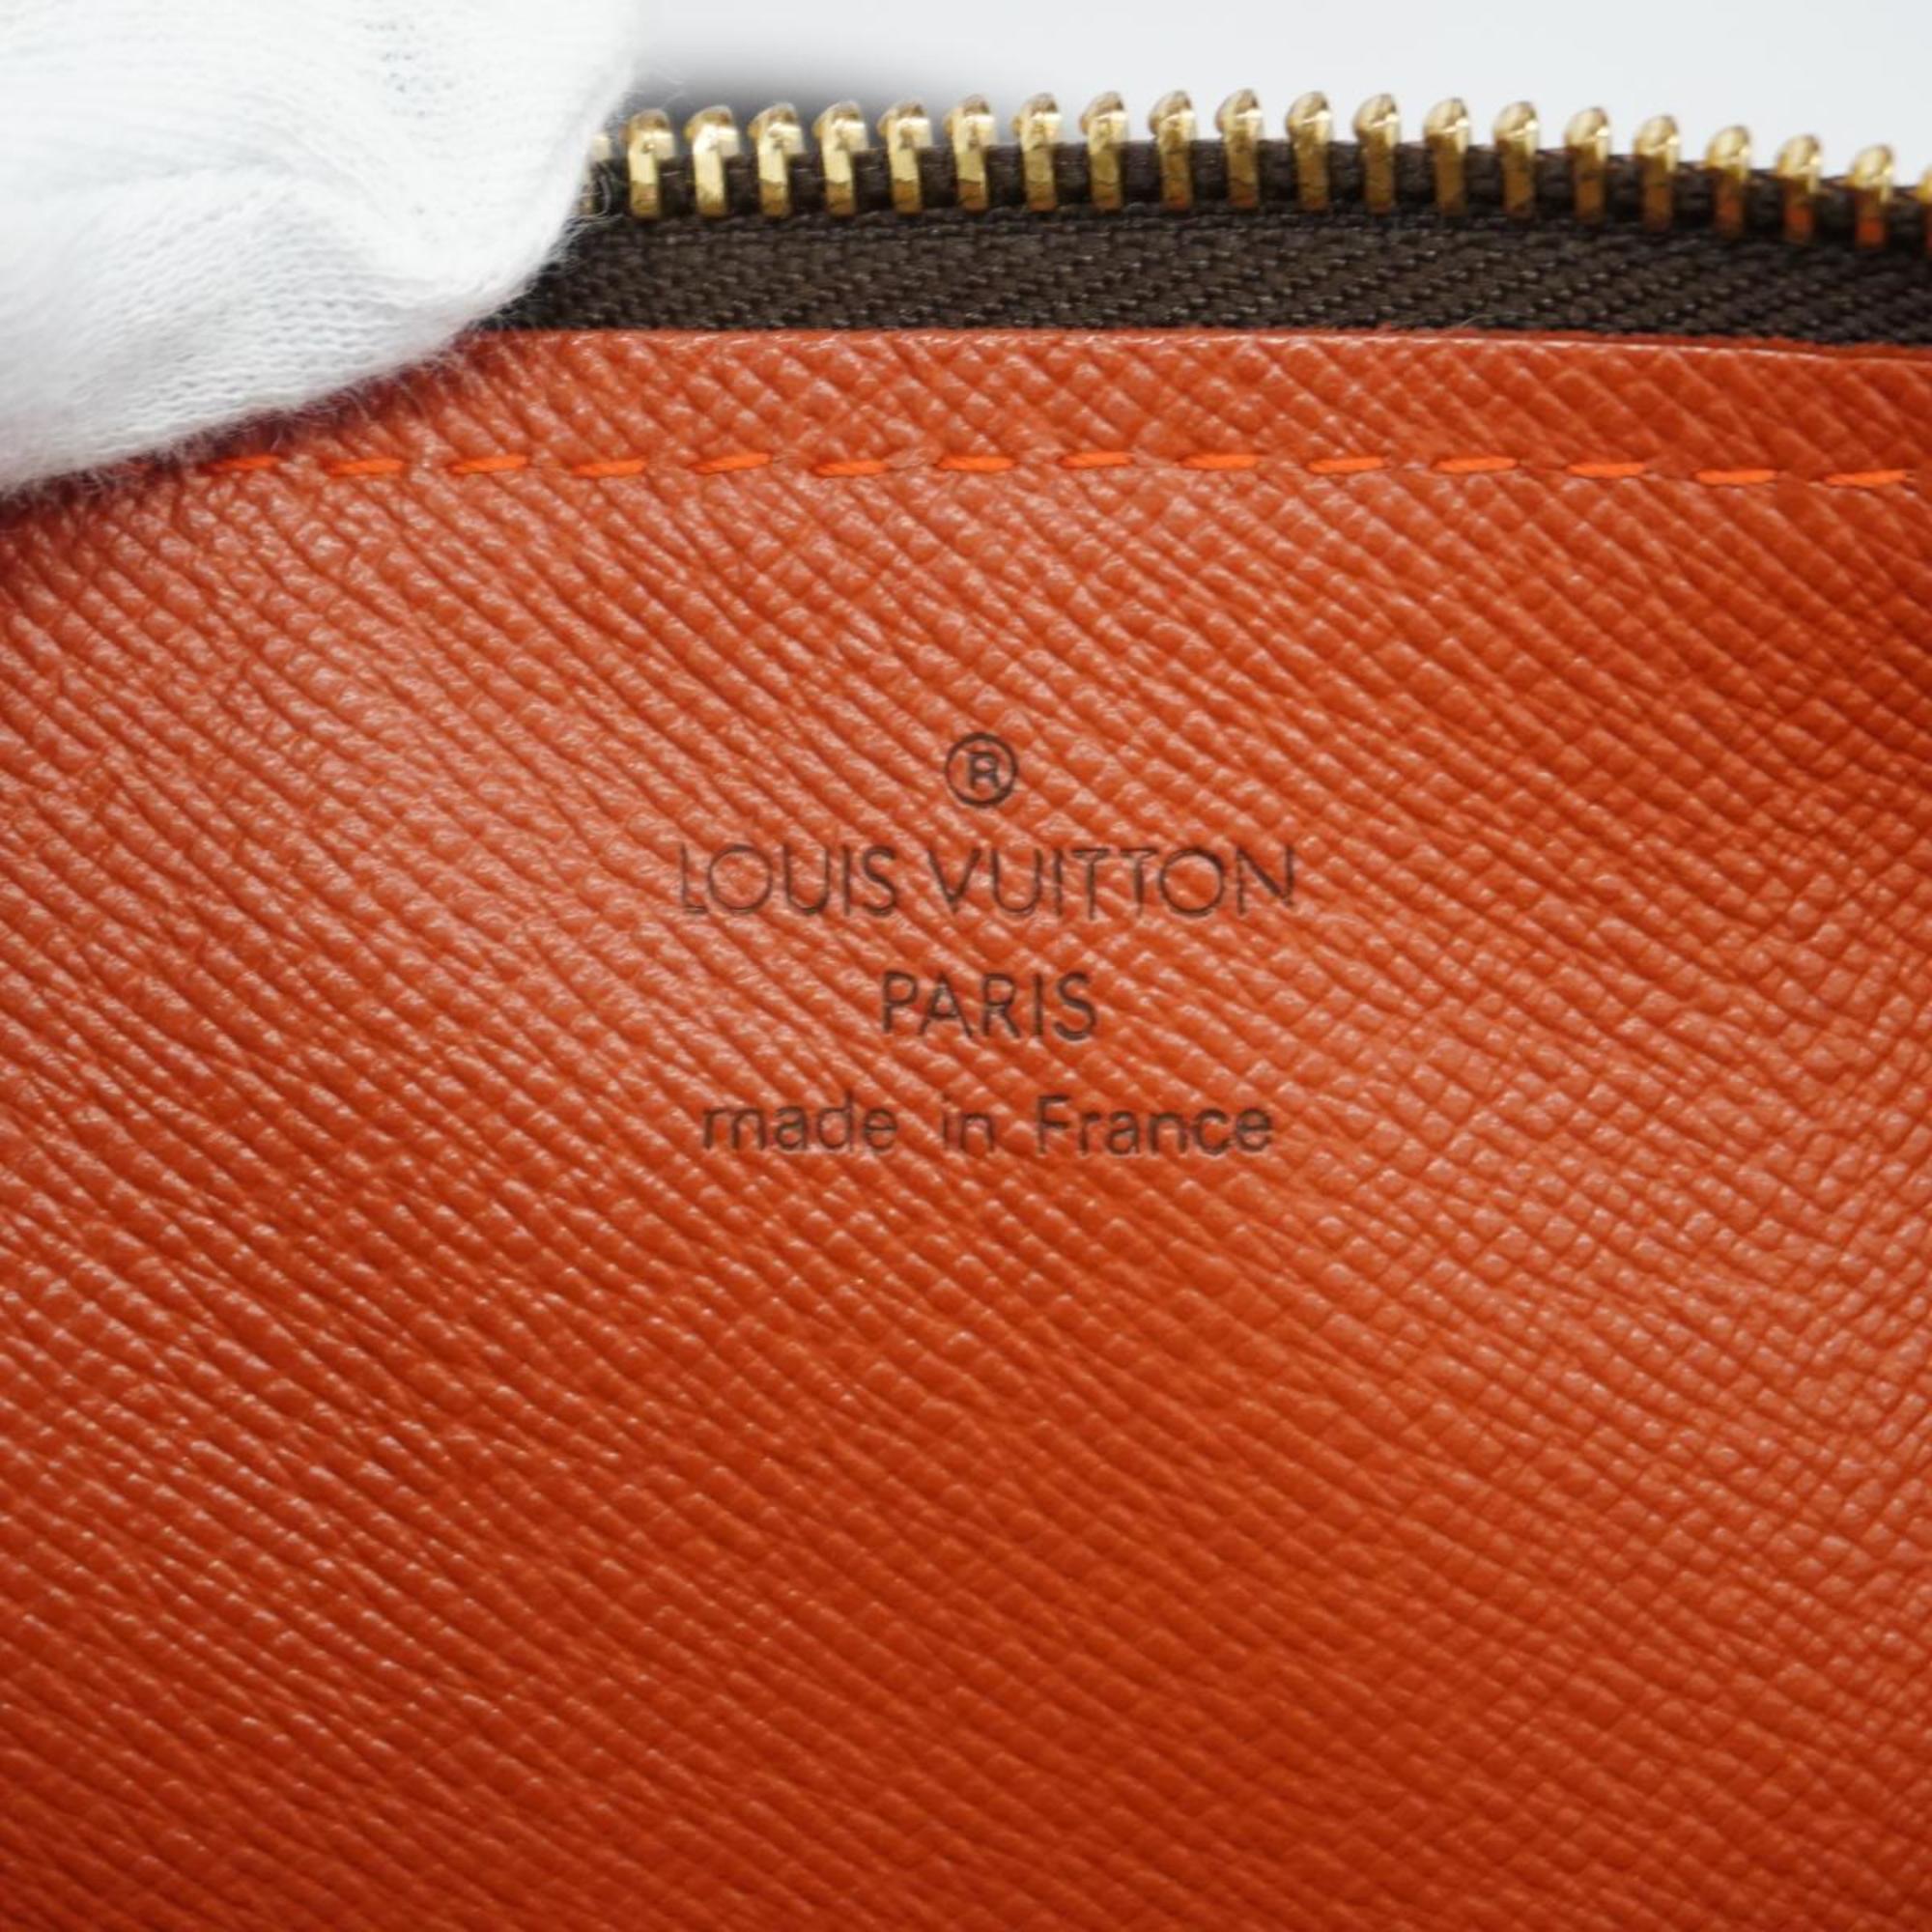 ルイ・ヴィトン(Louis Vuitton) ルイ・ヴィトン ハンドバッグ ダミエ パピヨン30 N51303 エベヌレディース